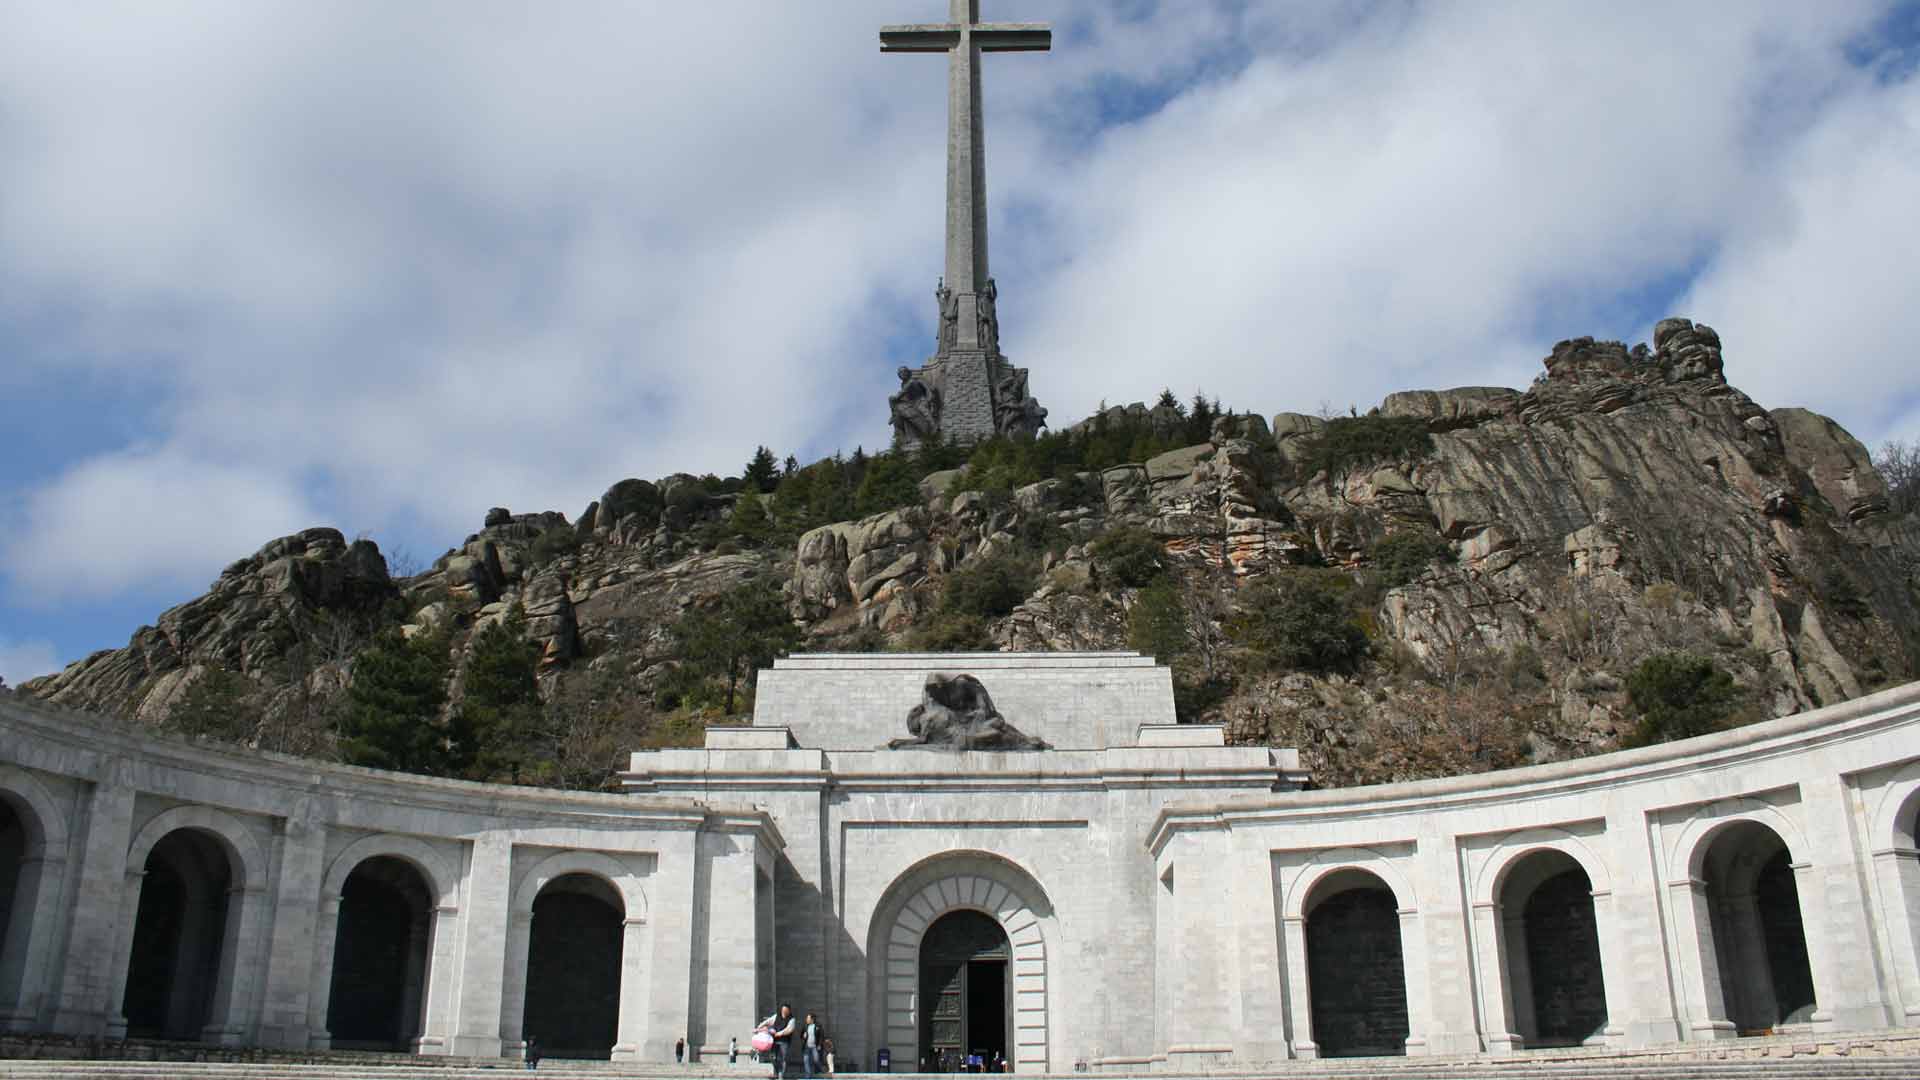 El prior del Valle de los Caídos dice que "no se llevarán a Franco" porque "el templo es inviolable"